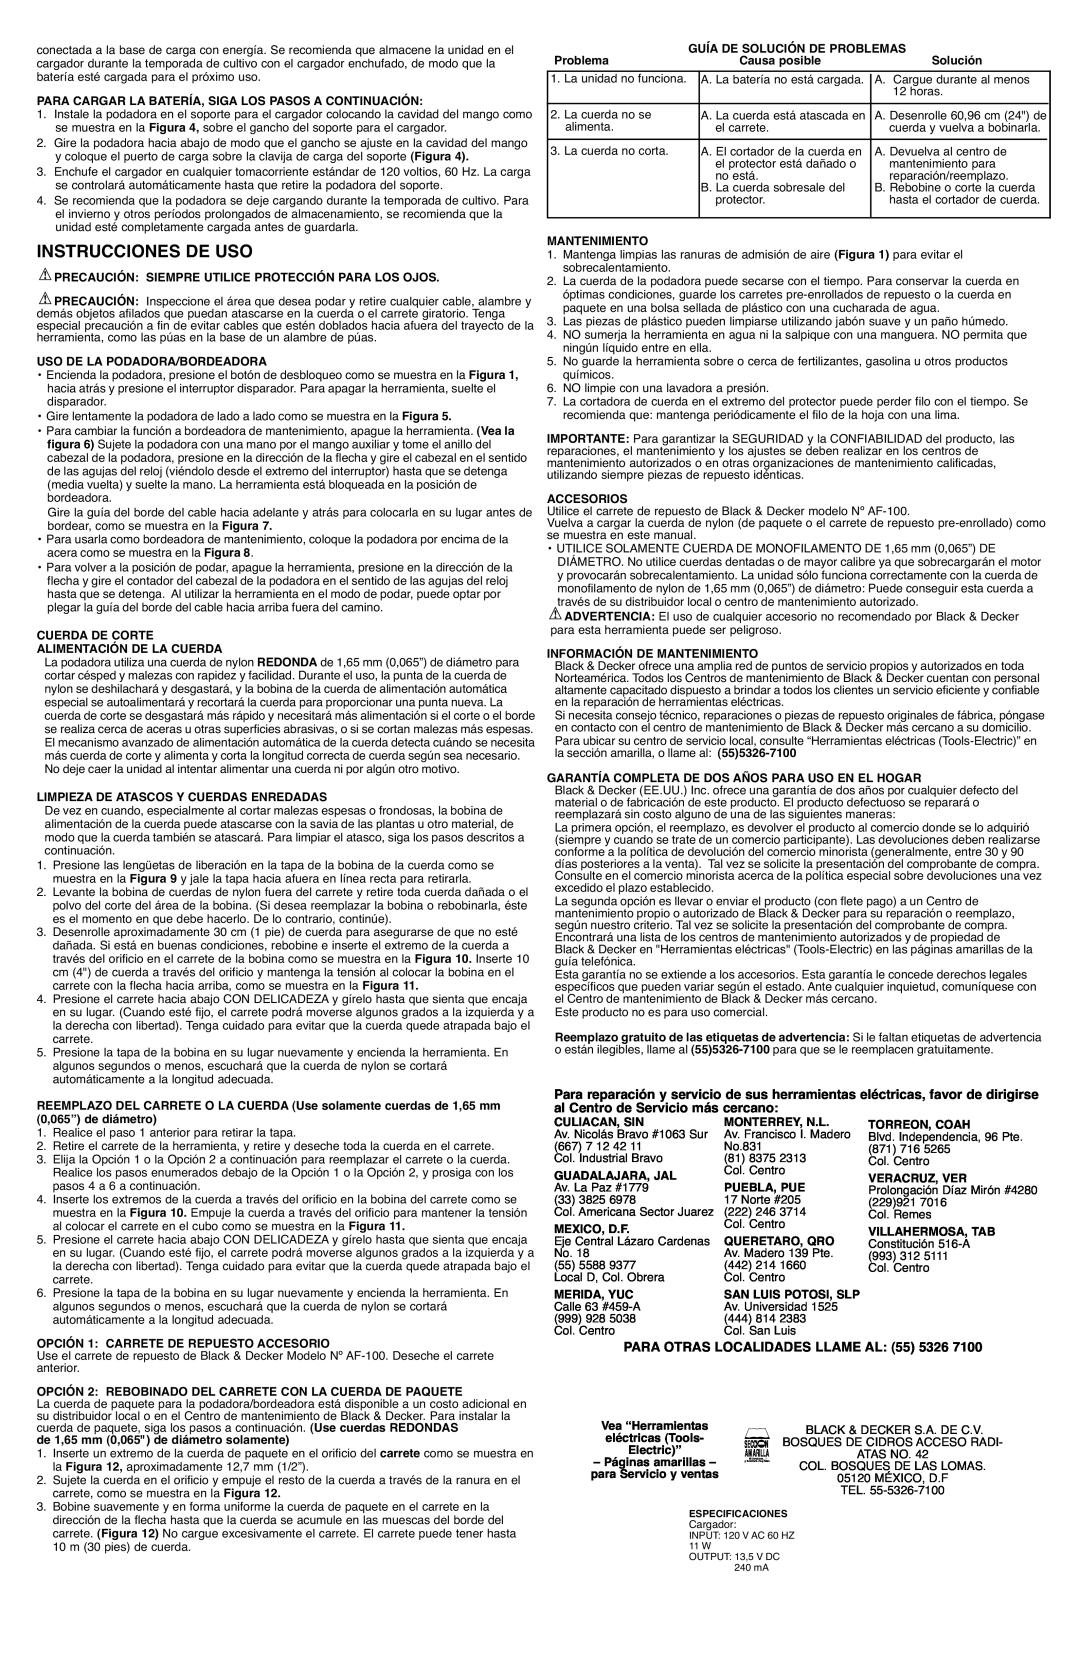 Black & Decker CST1200R instruction manual Instrucciones De Uso, PARA OTRAS LOCALIDADES LLAME AL 55 